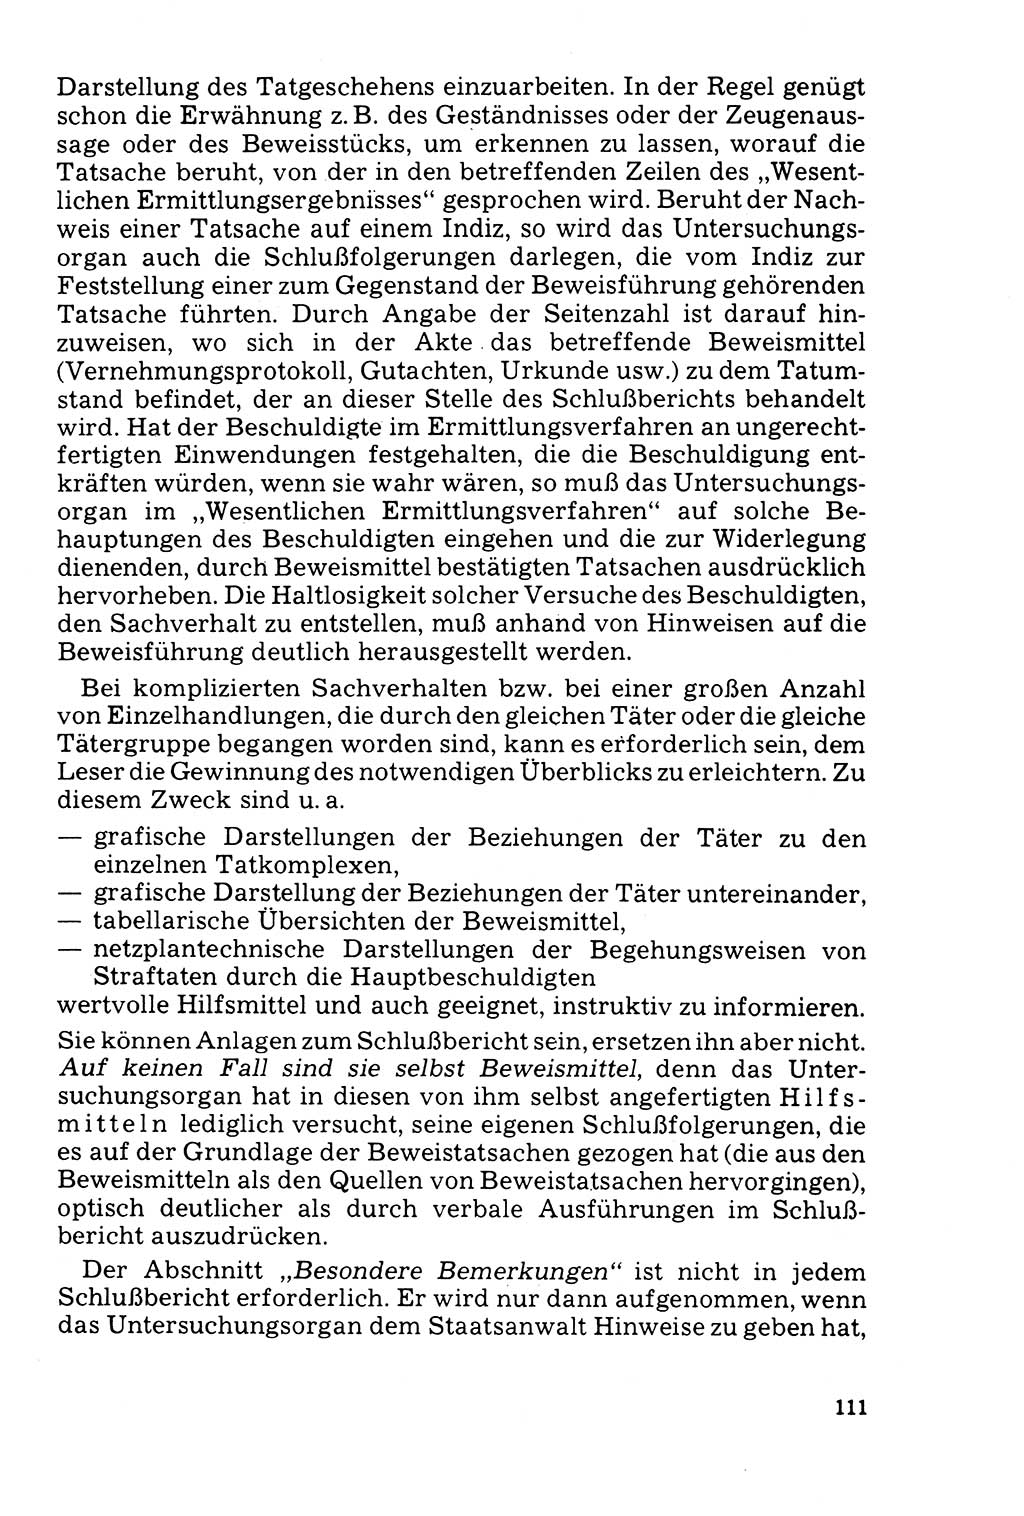 Der Abschluß des Ermittlungsverfahrens [Deutsche Demokratische Republik (DDR)] 1978, Seite 111 (Abschl. EV DDR 1978, S. 111)